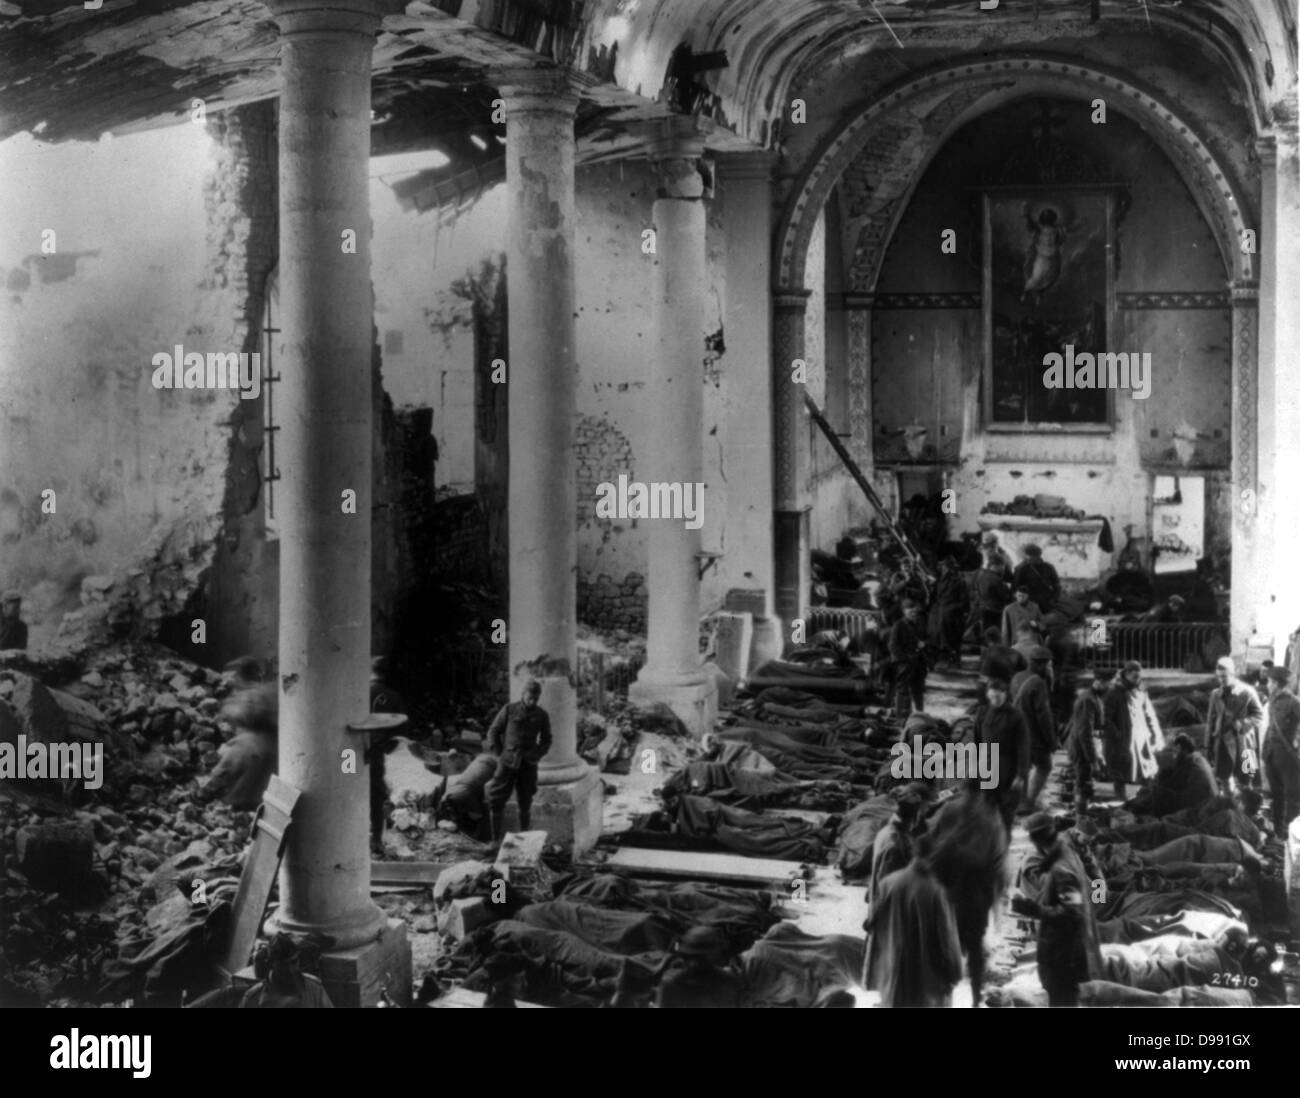 Weltkrieg 1914-1918: amerikanische Armee Feldlazarett in Ruinen einer Kirche, Frankreich, 1918. Kriegsführung Opfer Medizin Stockfoto